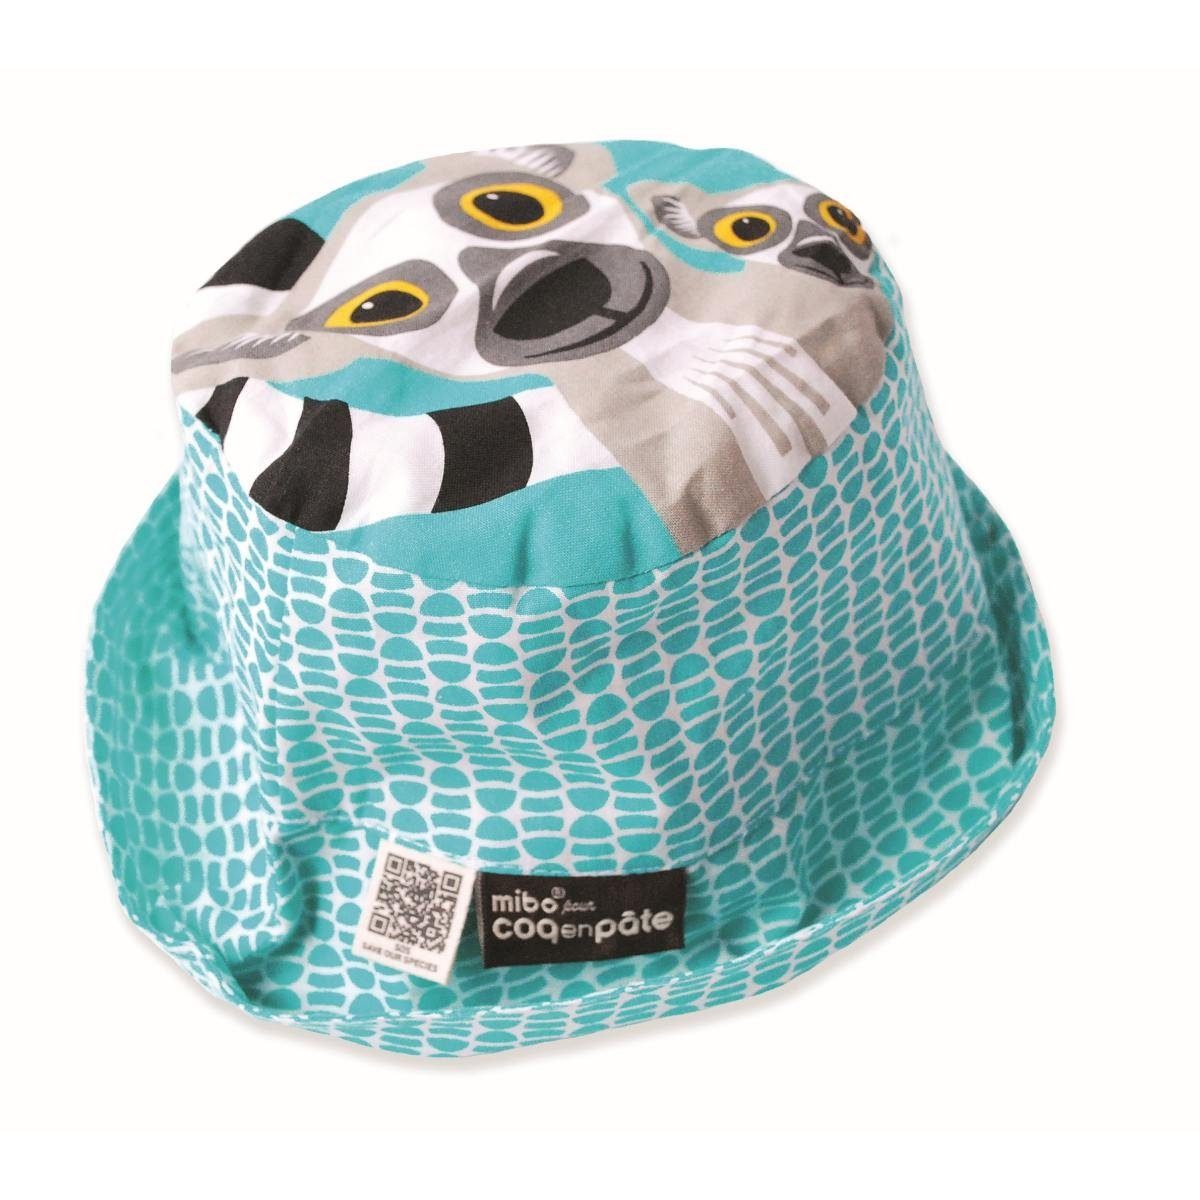 COQ EN PATE Sonnenhut Farbenfroher Kinder-Hut mit Tiermotiven und Mustern Sonnenschutz Lemur - Größe: S